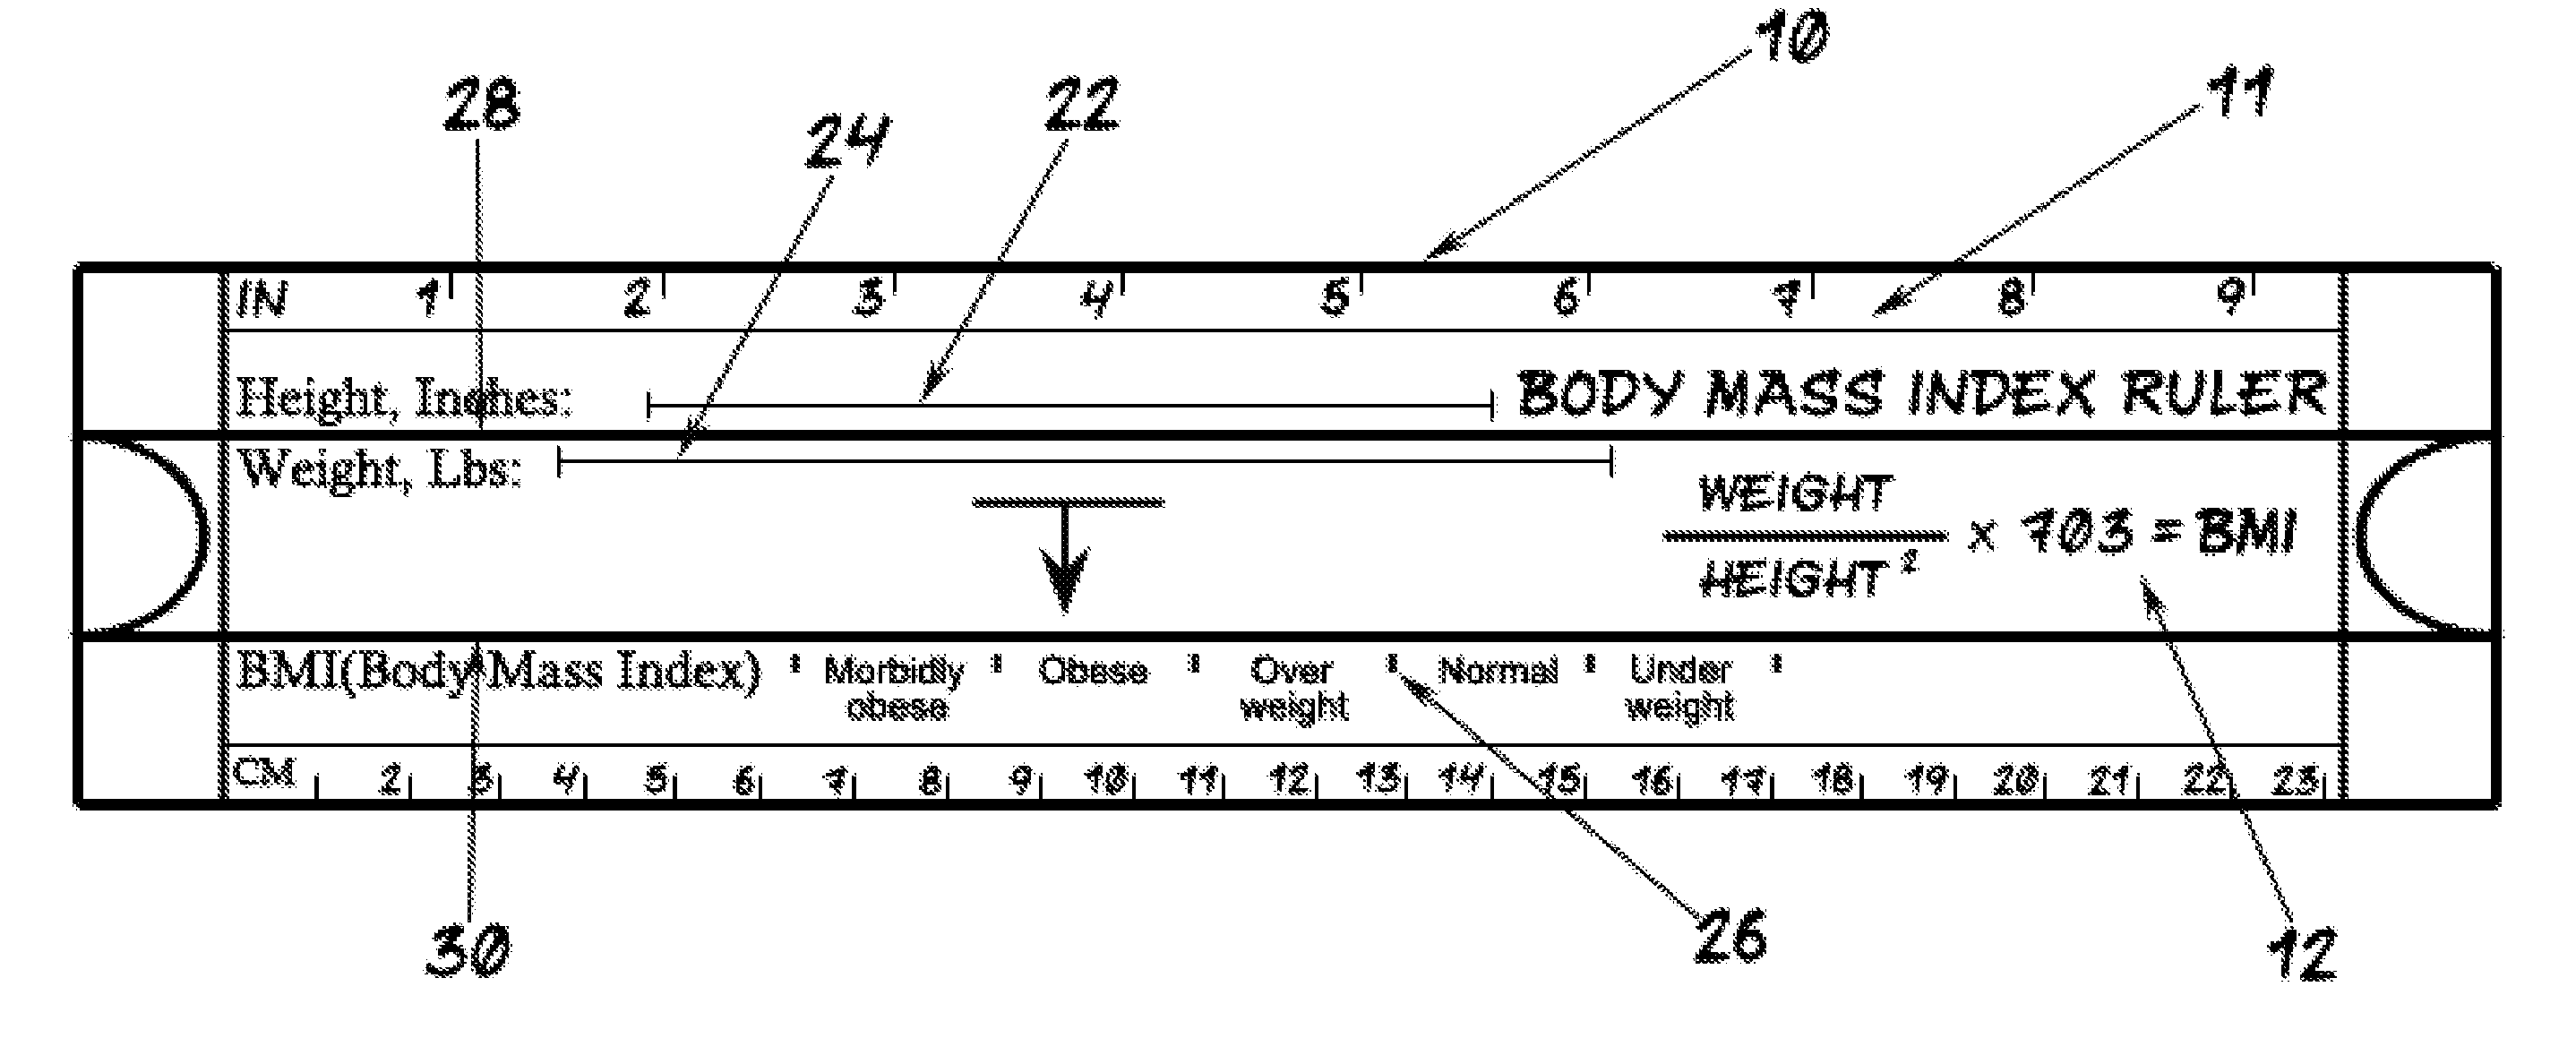 BMI Ruler